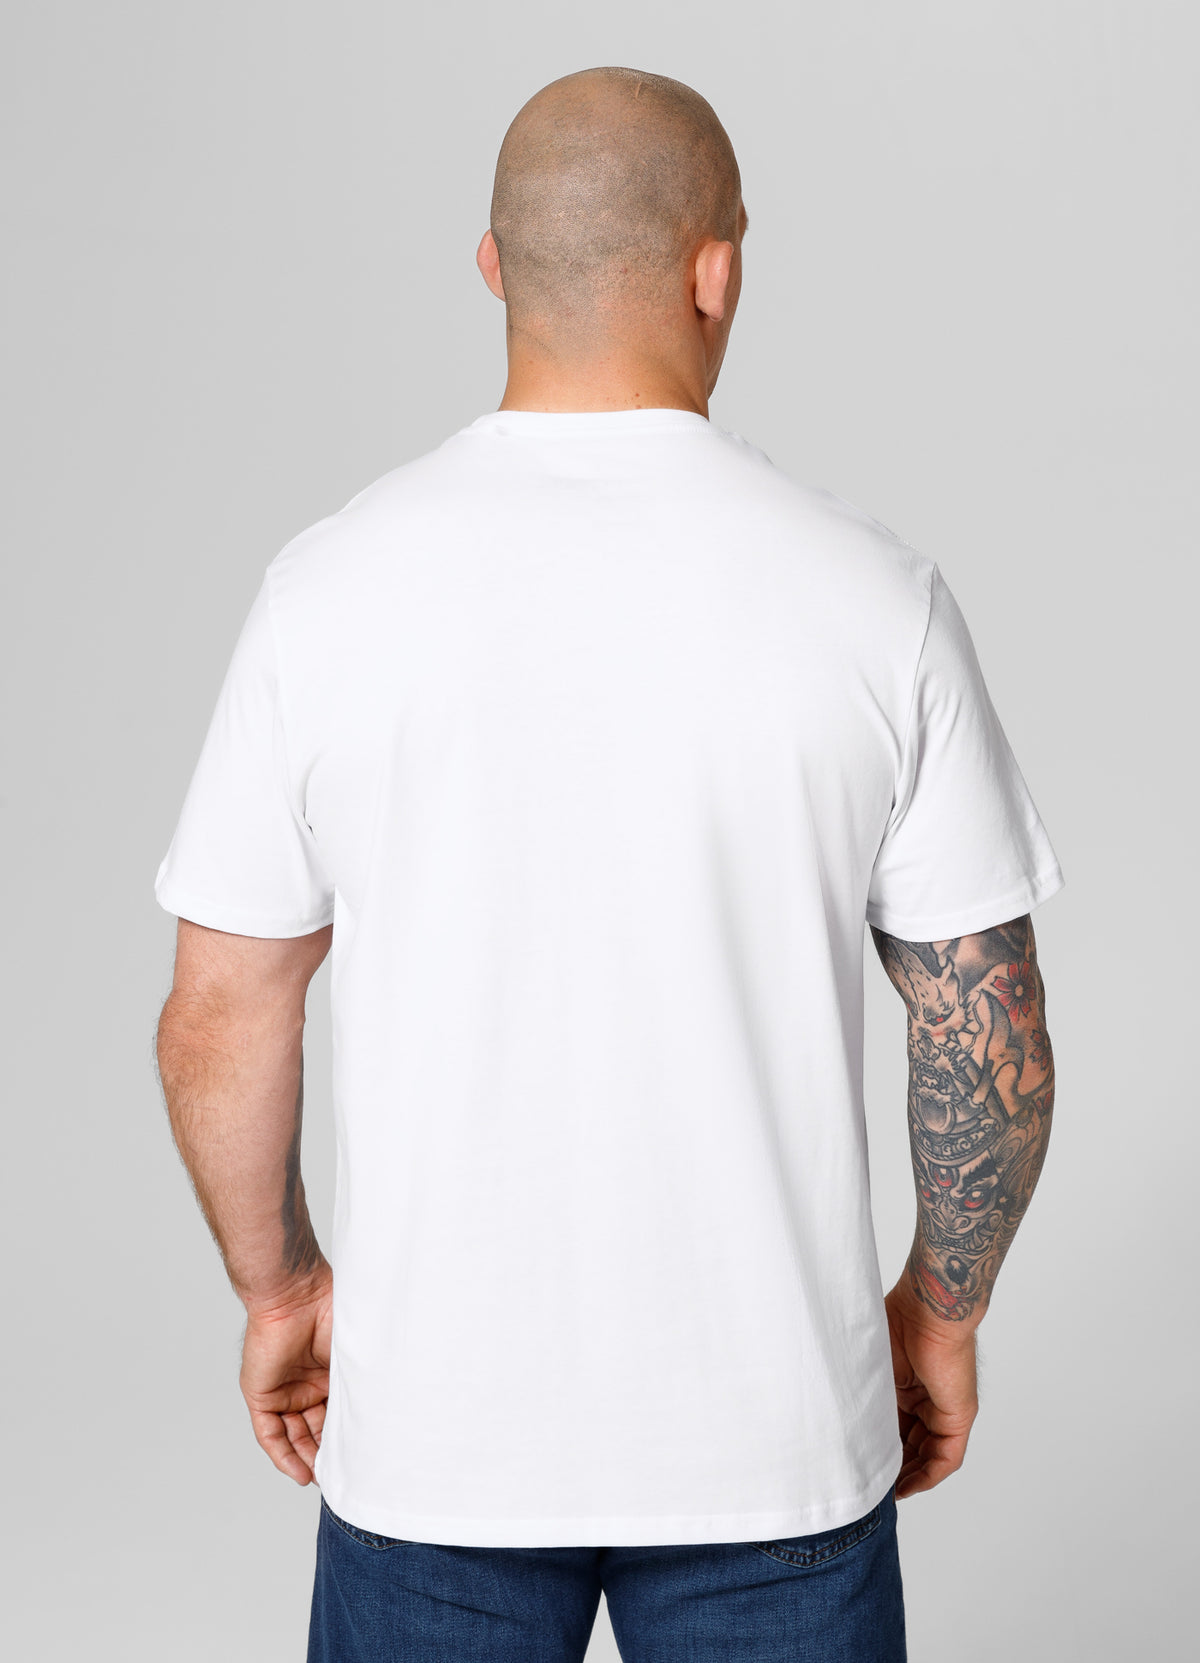 SCRATCH Lightweight White T-shirt